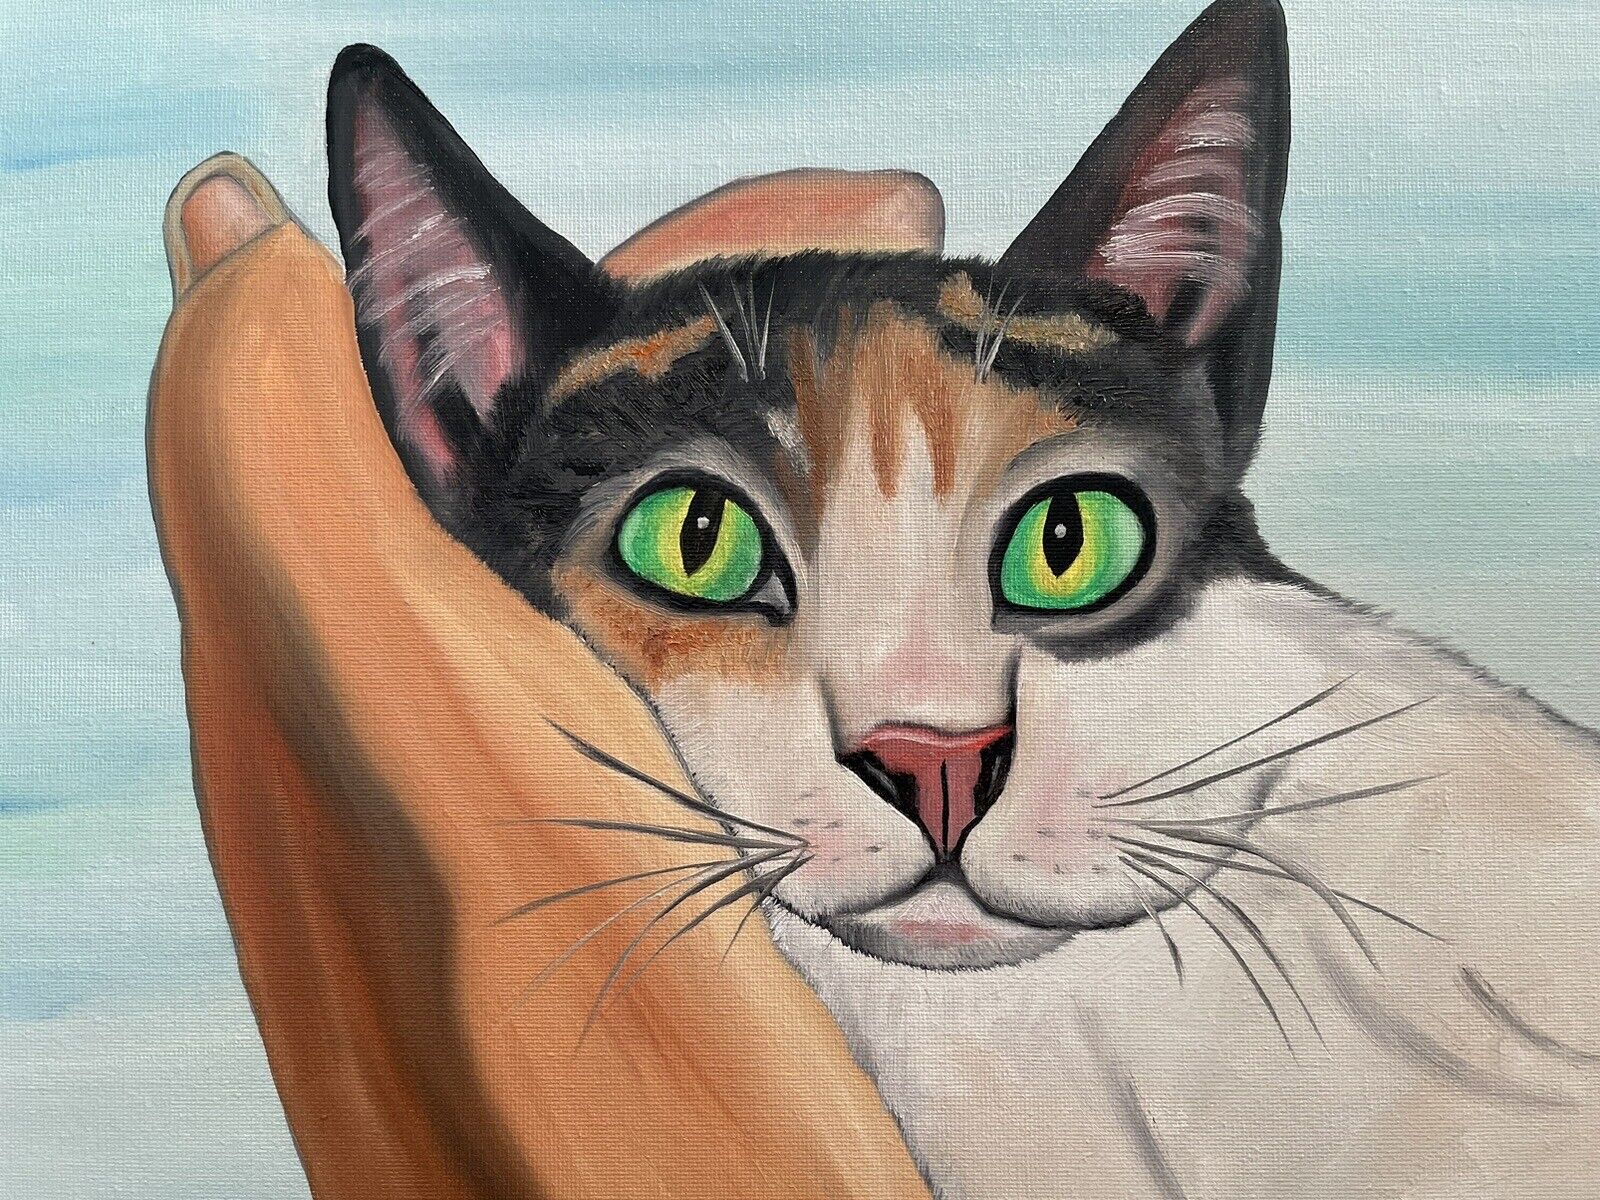 Original oil painting signed 11 x 14 Cute Calico Cat Без бренда - фотография #5